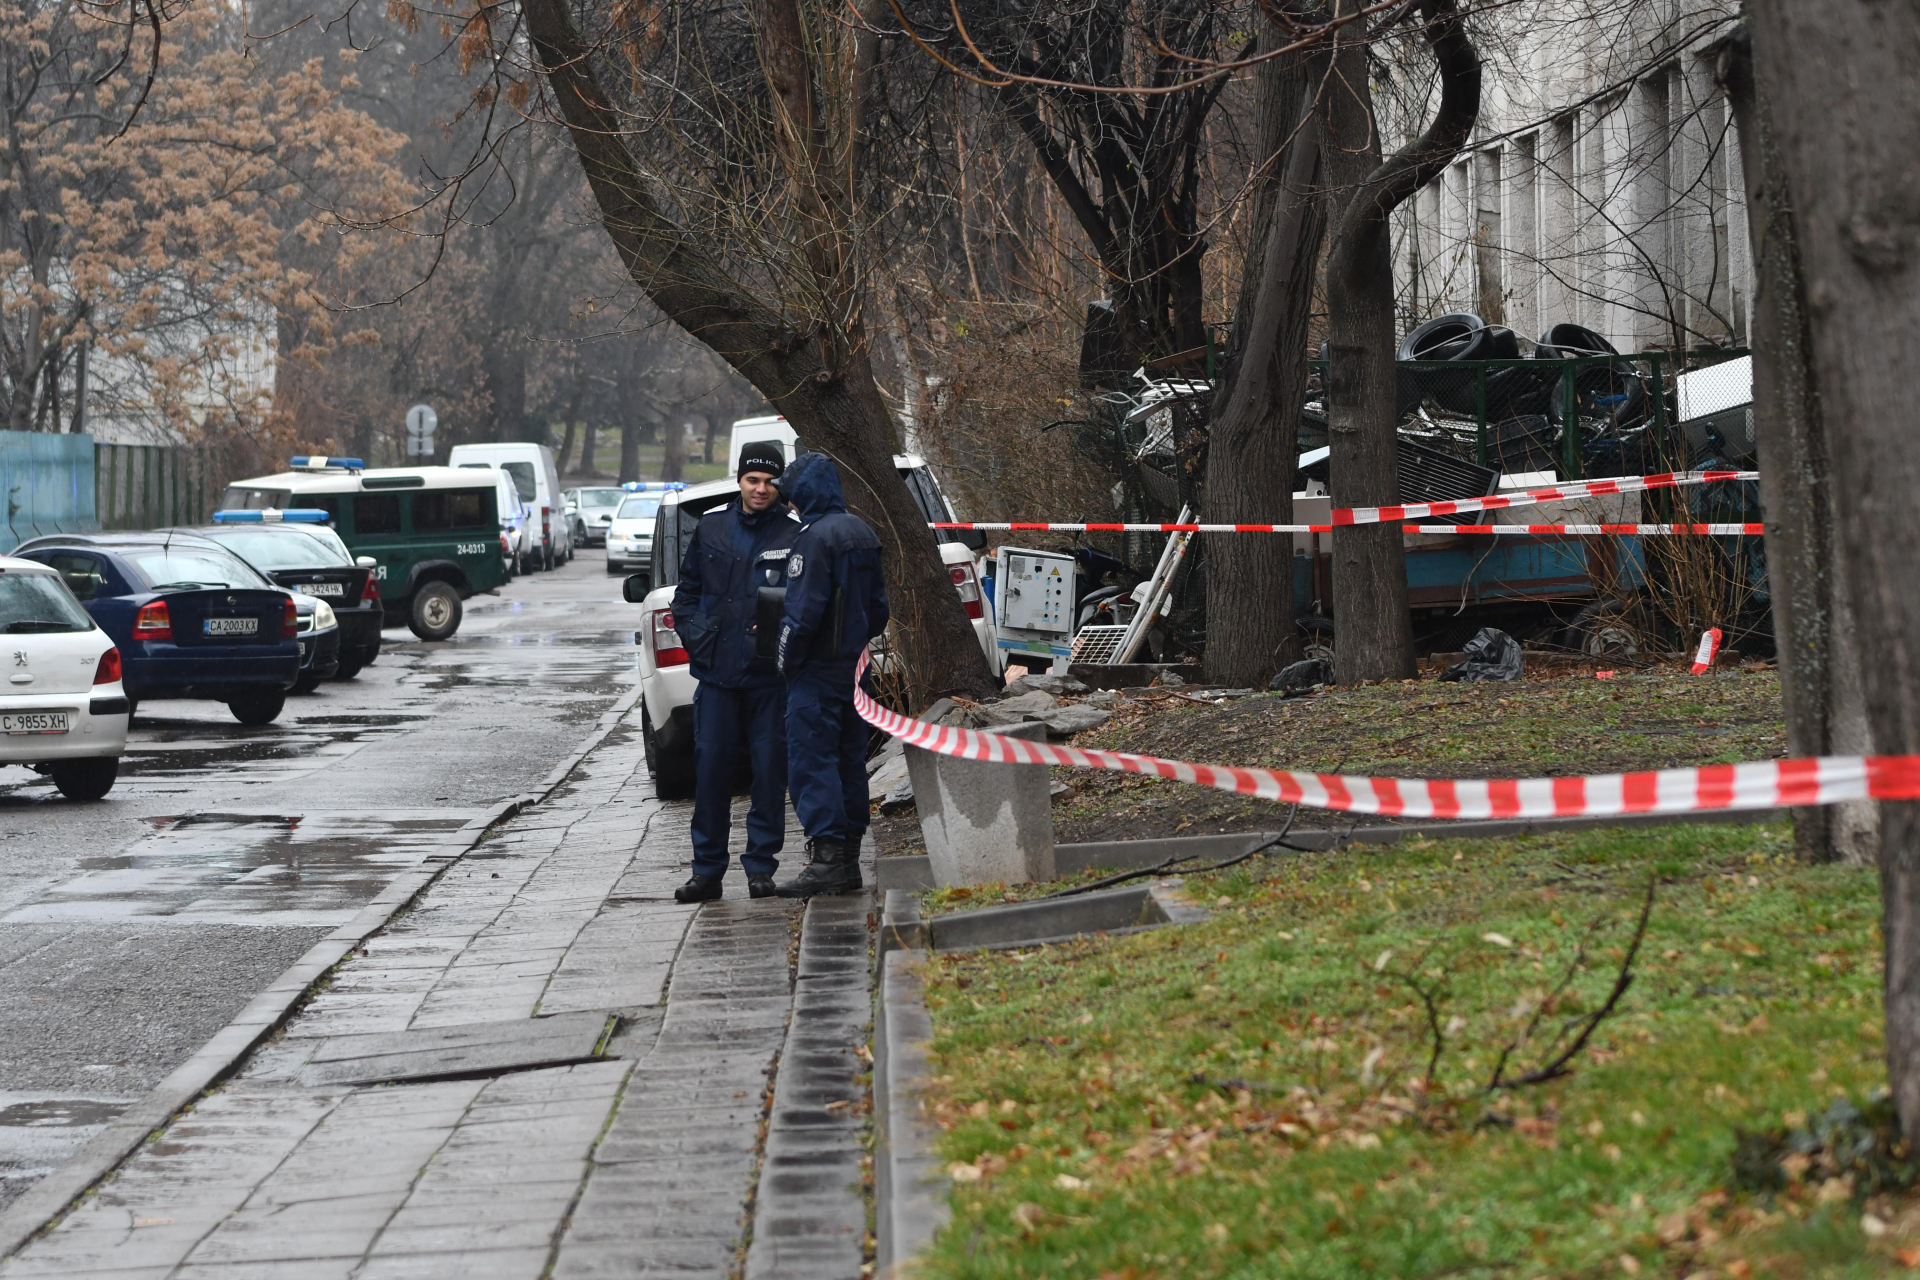 Ново свирепо убийство разтърси България